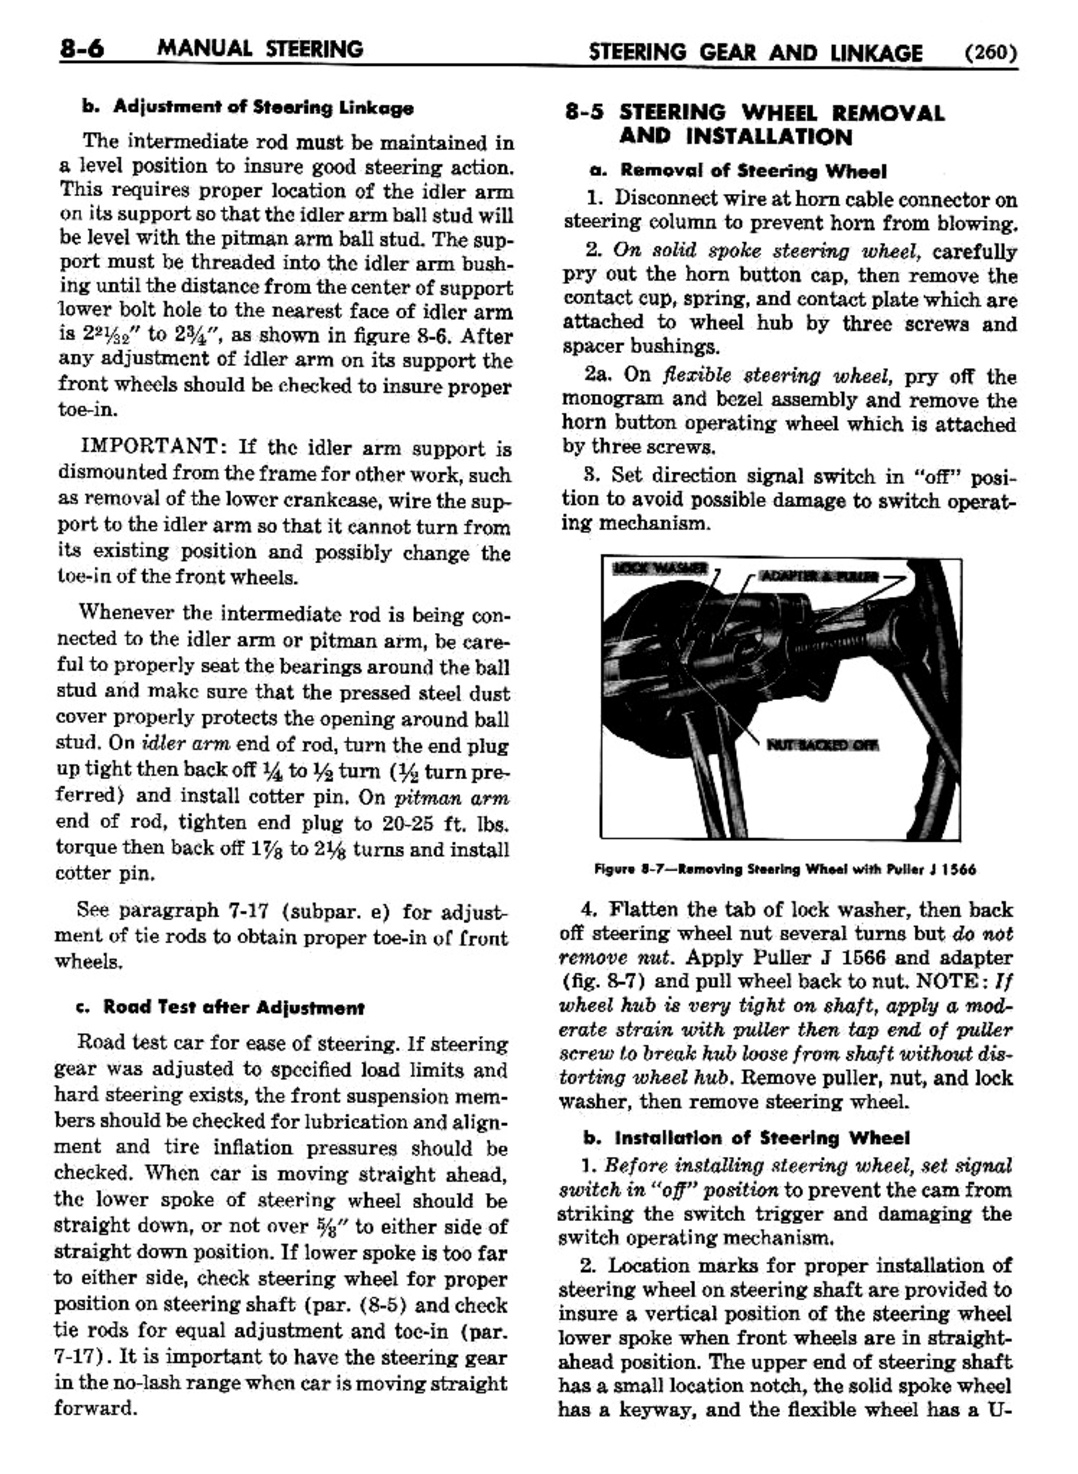 n_09 1954 Buick Shop Manual - Steering-006-006.jpg